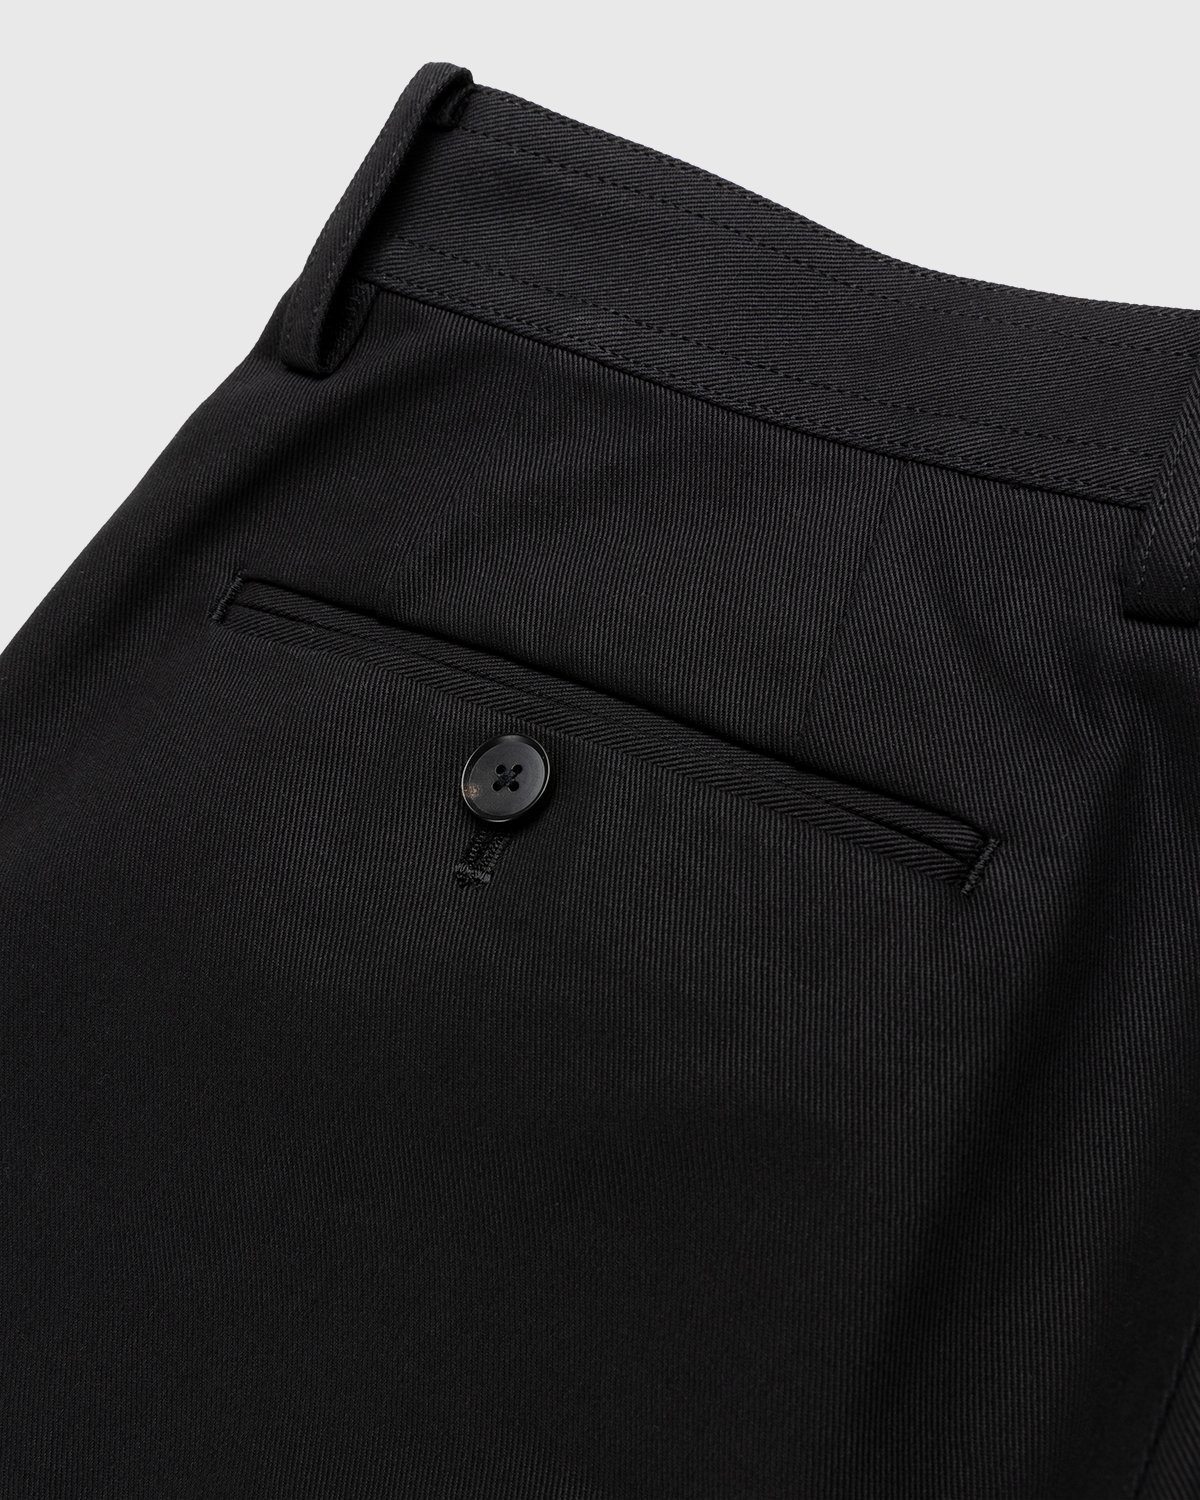 Auralee – Cotton Woven Pants Black - Pants - Black - Image 4